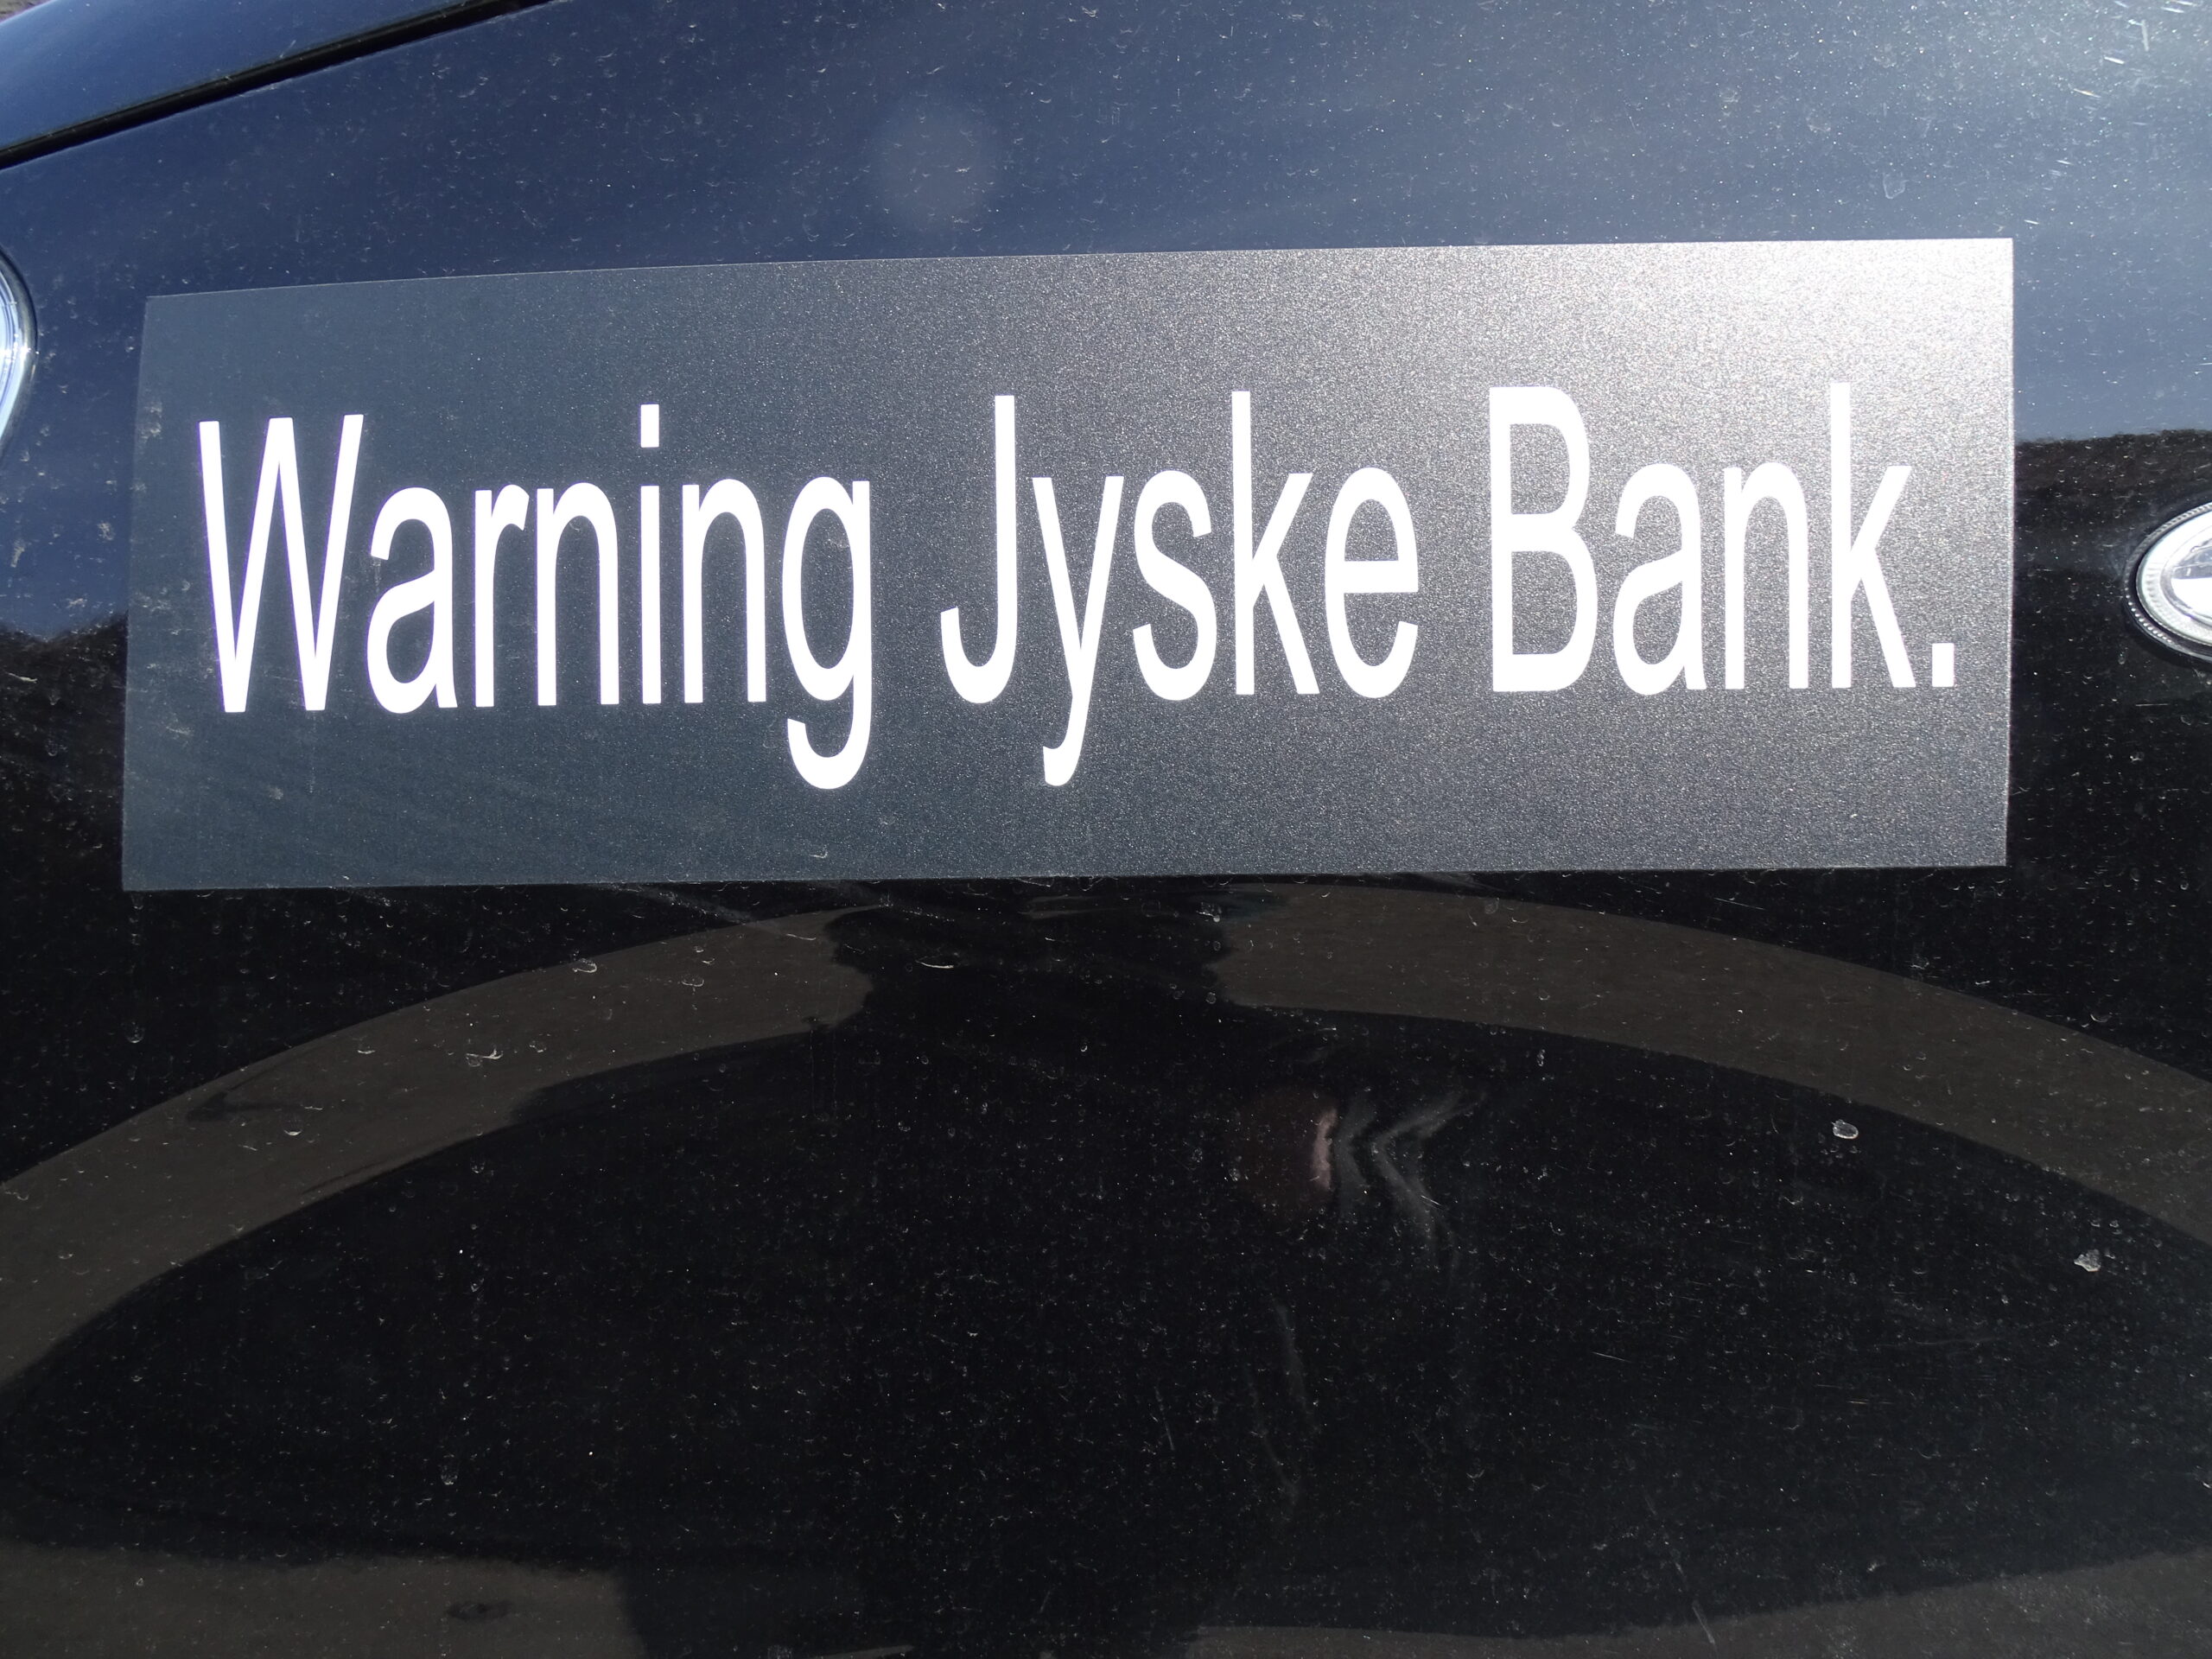 Hvis ikke Finanstilsynet sætter Jyske Bank under skærpet tilsyn, og måske endda helt fratager Jyske Bank’s tilladelse til at drive bank virksomhed i Danmark, kan det kun skyldes kammerateri langt op i de danske myndigheder, hvilket er politisk.